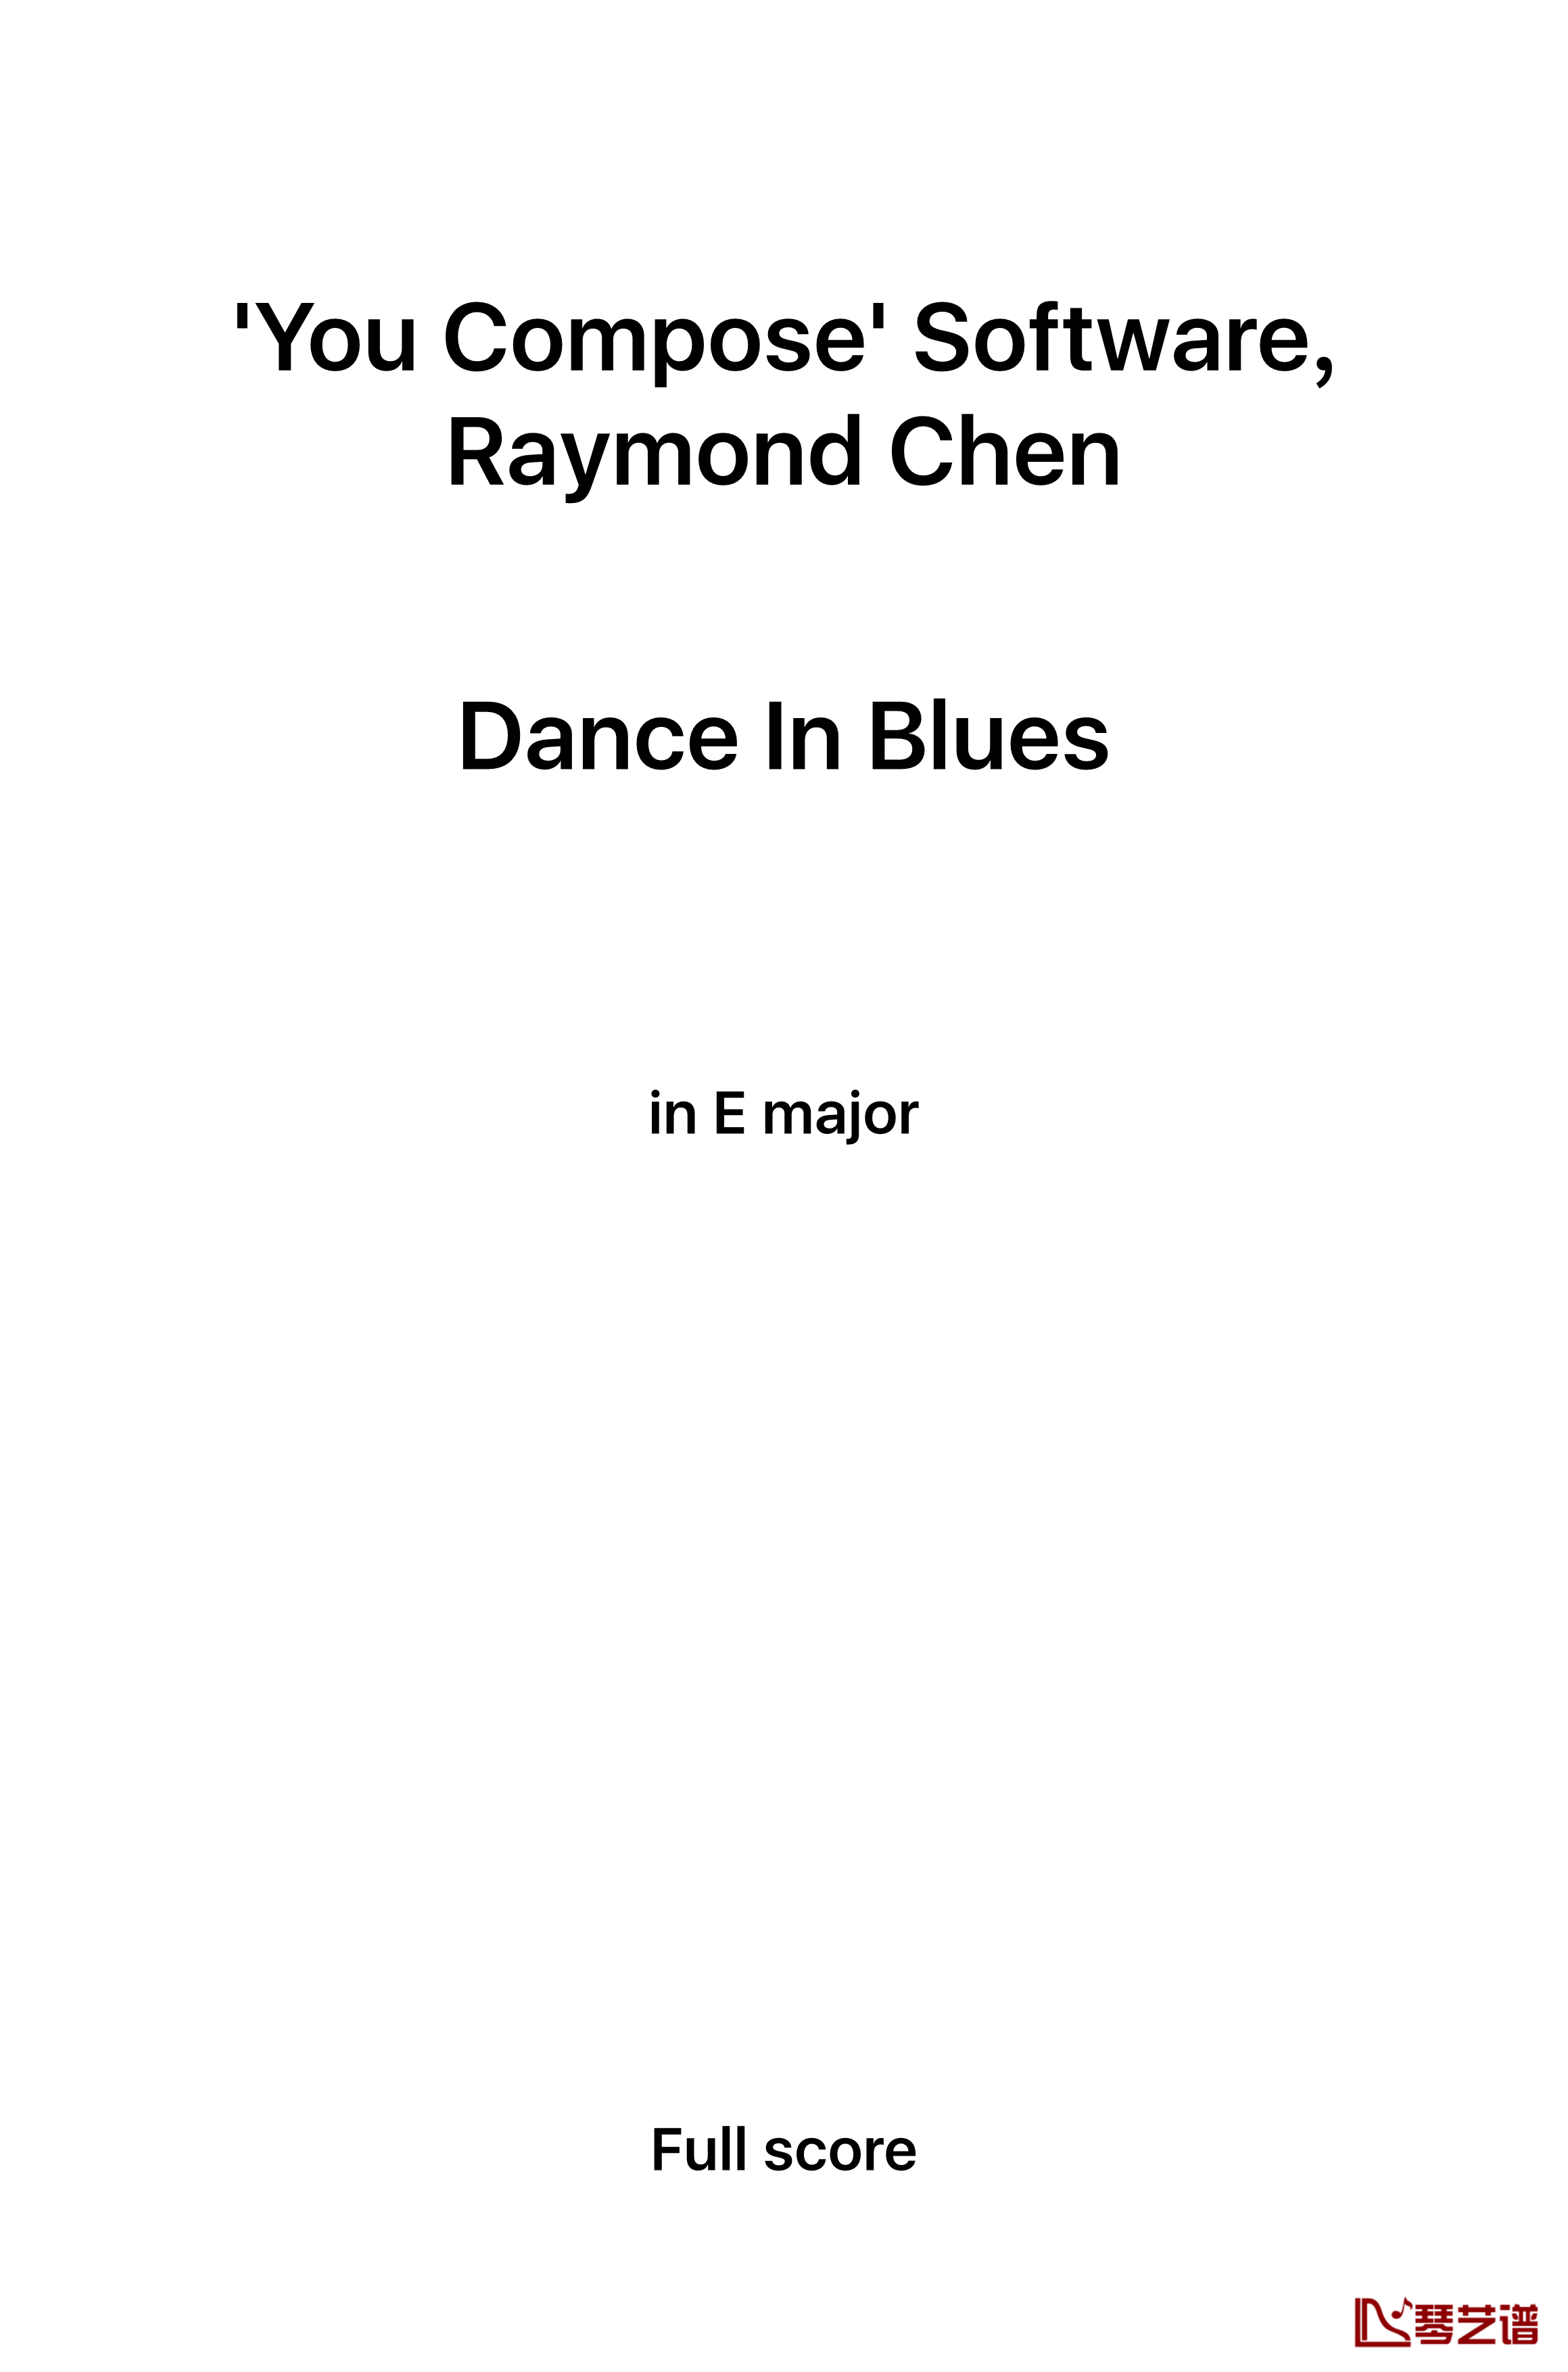 Dance in Blues钢琴谱-陈文戈